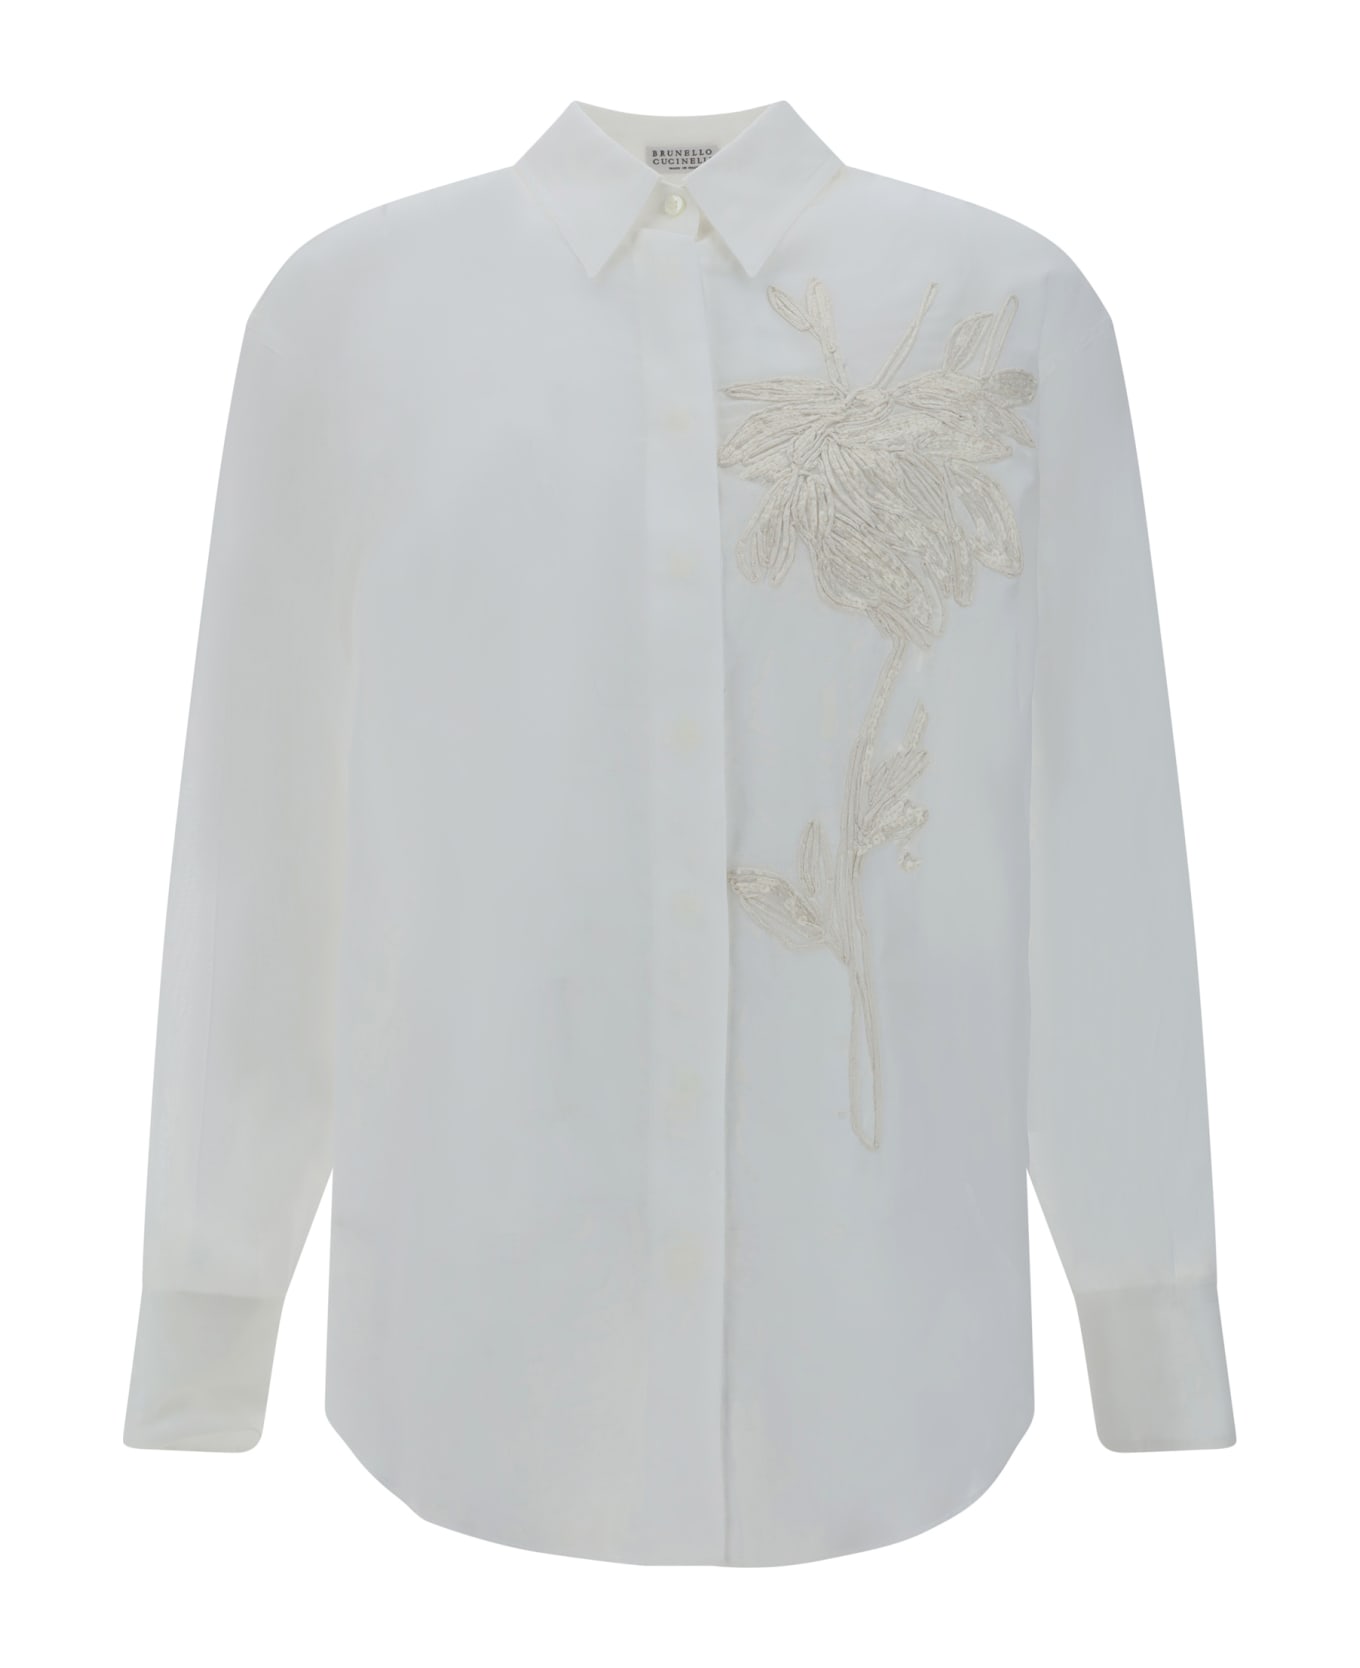 Brunello Cucinelli Floral Embroidery Shirt - Bianco Ottico シャツ